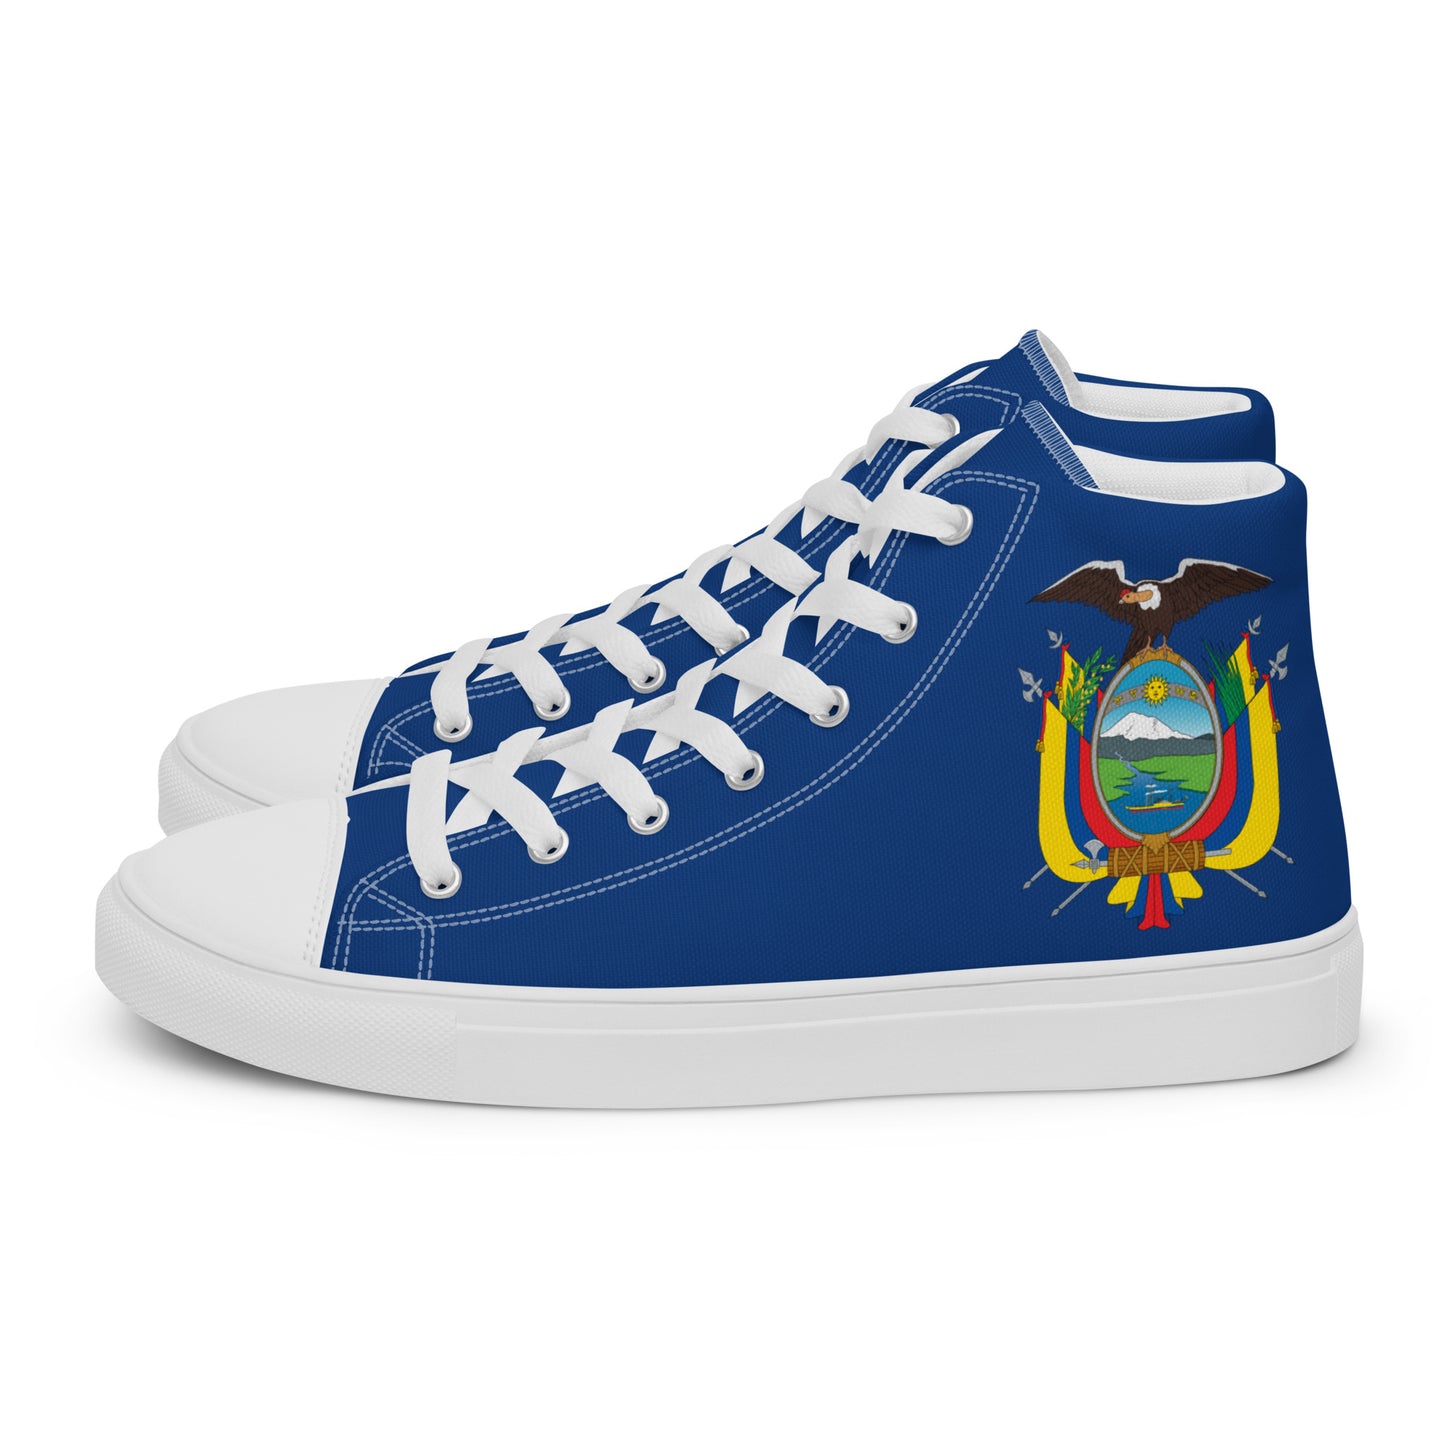 Ecuador - Women - Blue - High top shoes